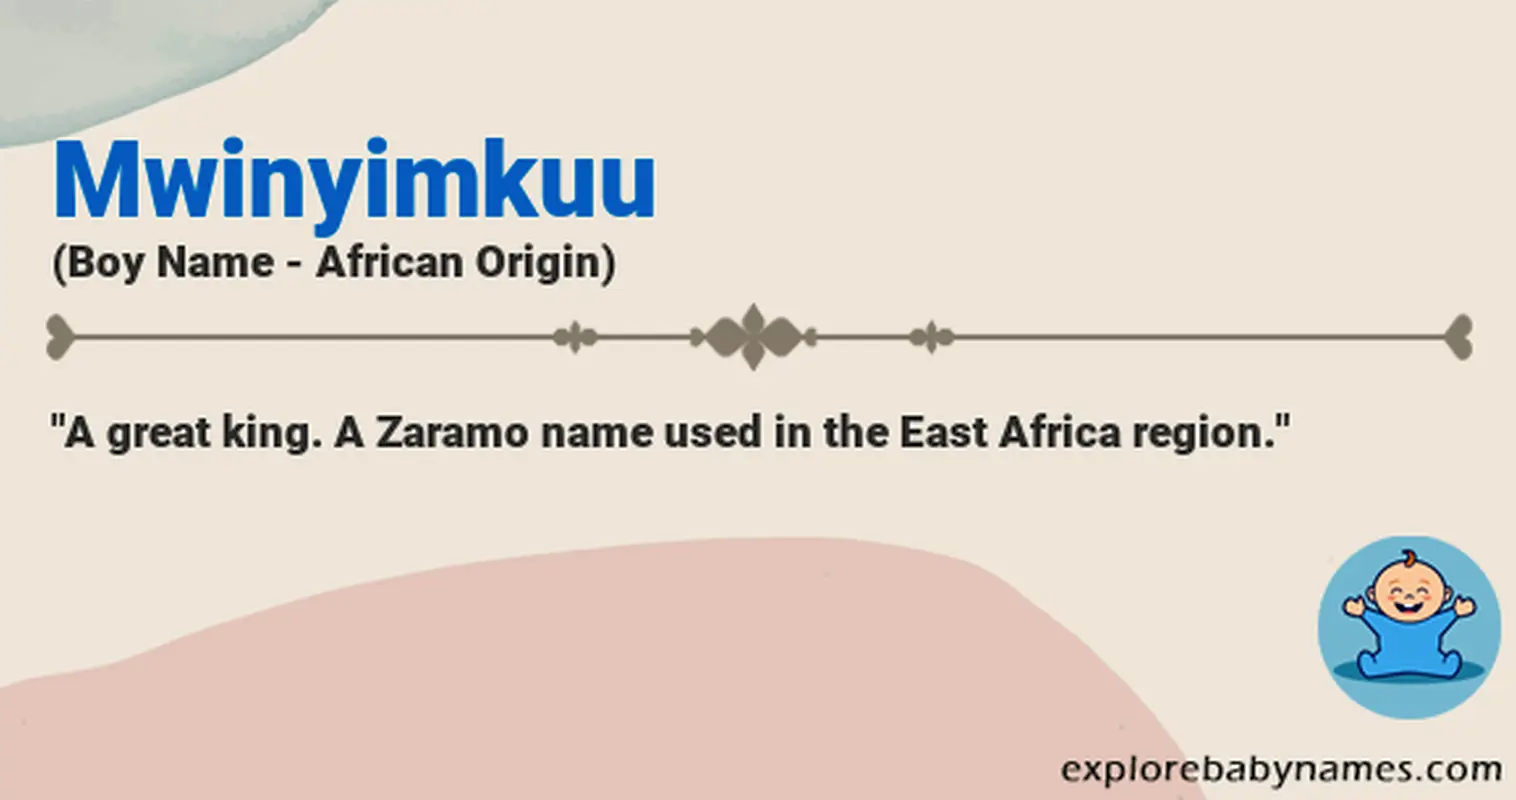 Meaning of Mwinyimkuu